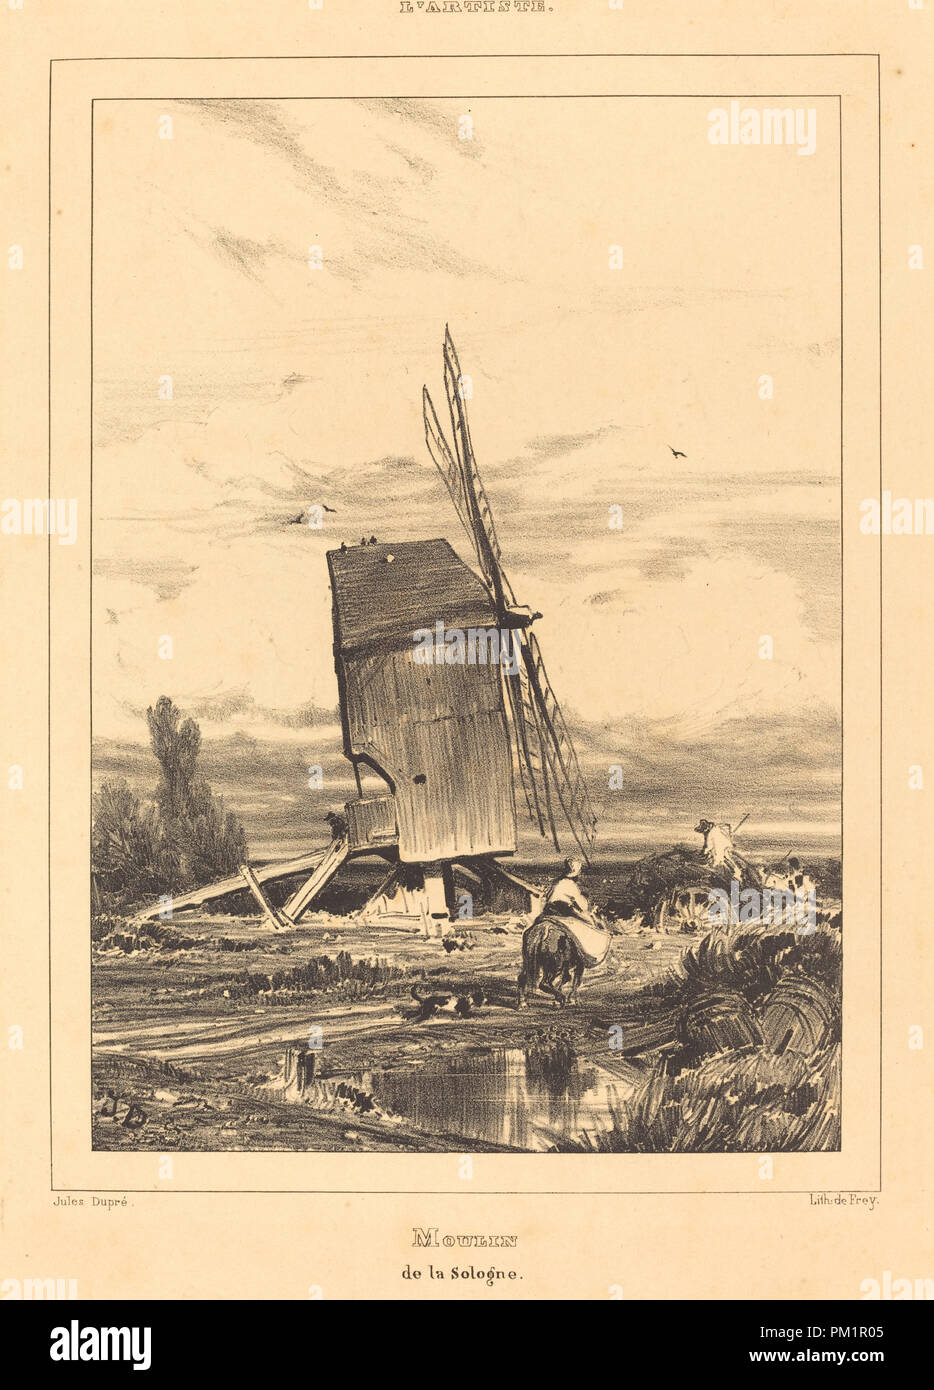 Moulin de la Sologne (Moulin de la Sologne). En date du : 1835. Technique : lithographie. Musée : National Gallery of Art, Washington DC. Auteur : Jules Dupre. Banque D'Images